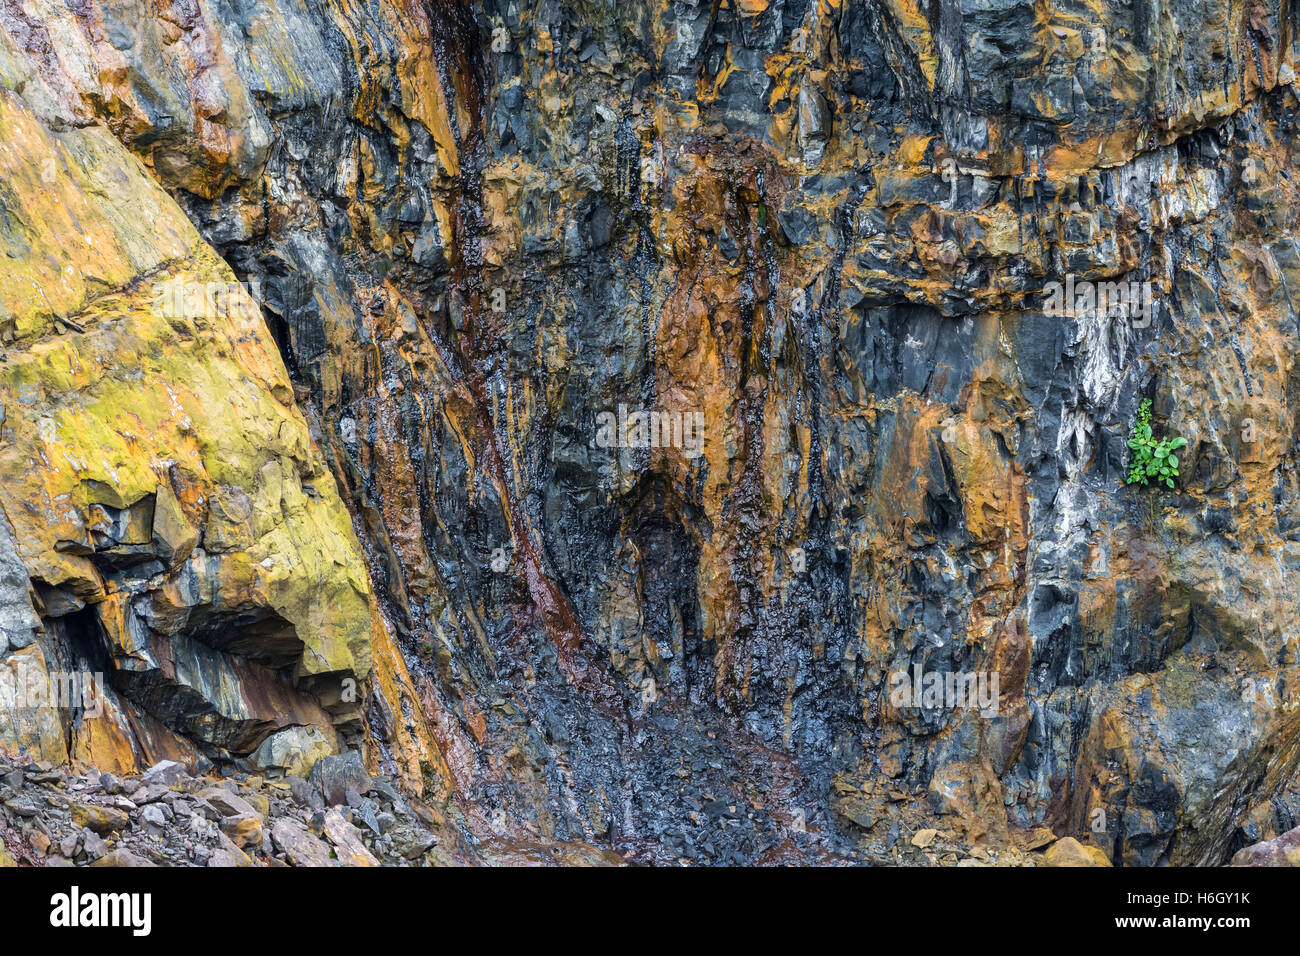 Dunkle farbige Rohöl Nässen von Felsen in einem Tagebau-Ölsand mine. Ecuador, Südamerika. Stockfoto